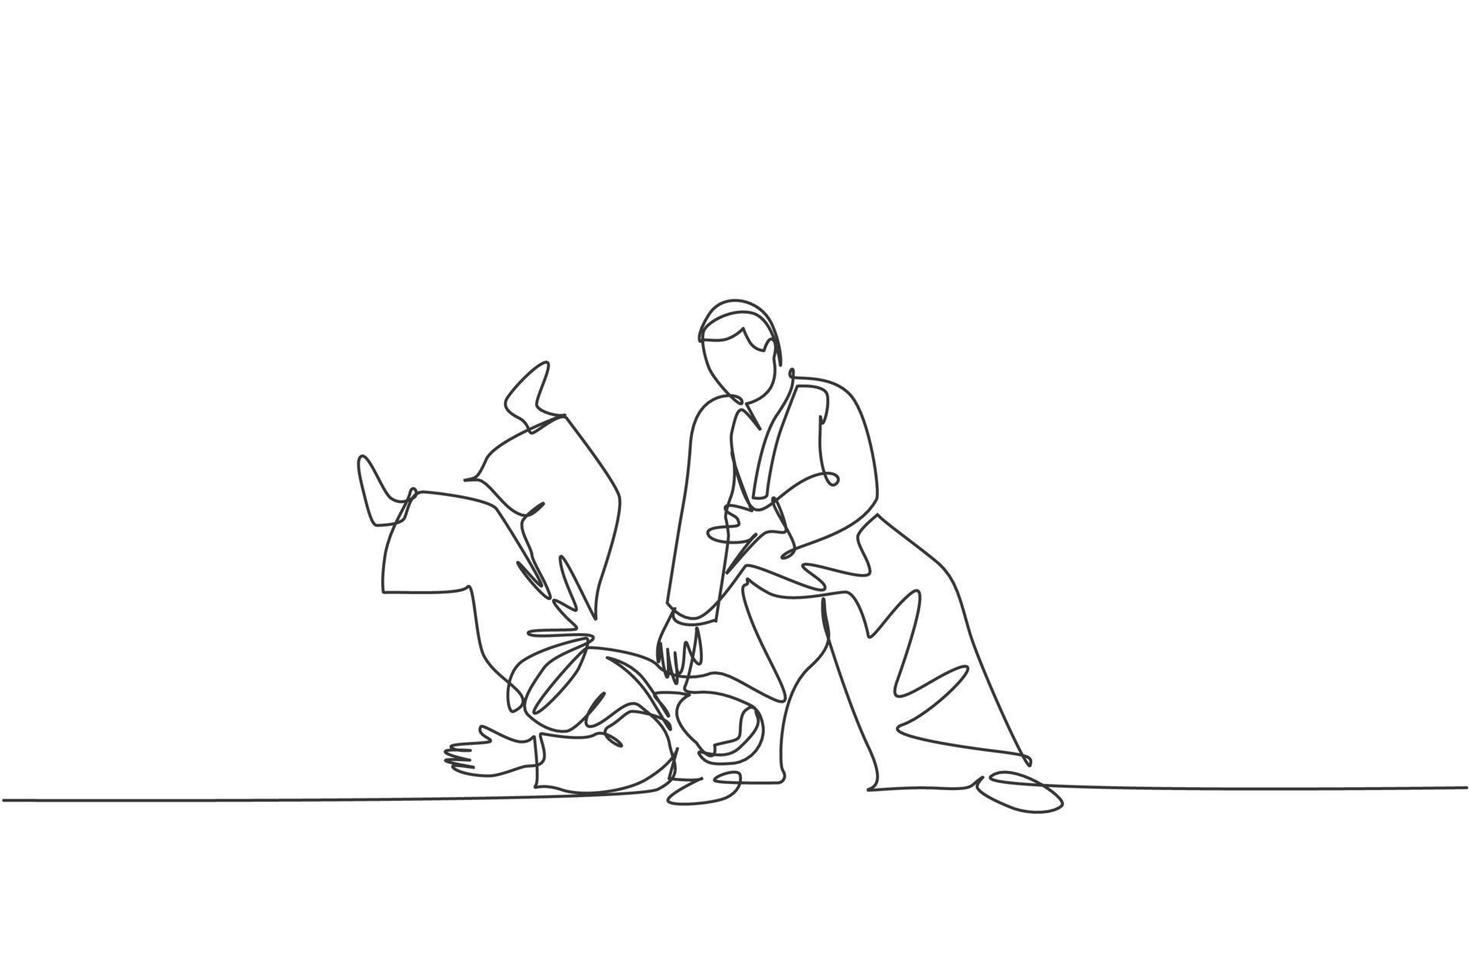 dibujo de una sola línea continua de dos jóvenes deportistas con kimono practicando la técnica de lucha de aikido. concepto de arte marcial japonés. Ilustración de vector de diseño de dibujo de una línea de moda